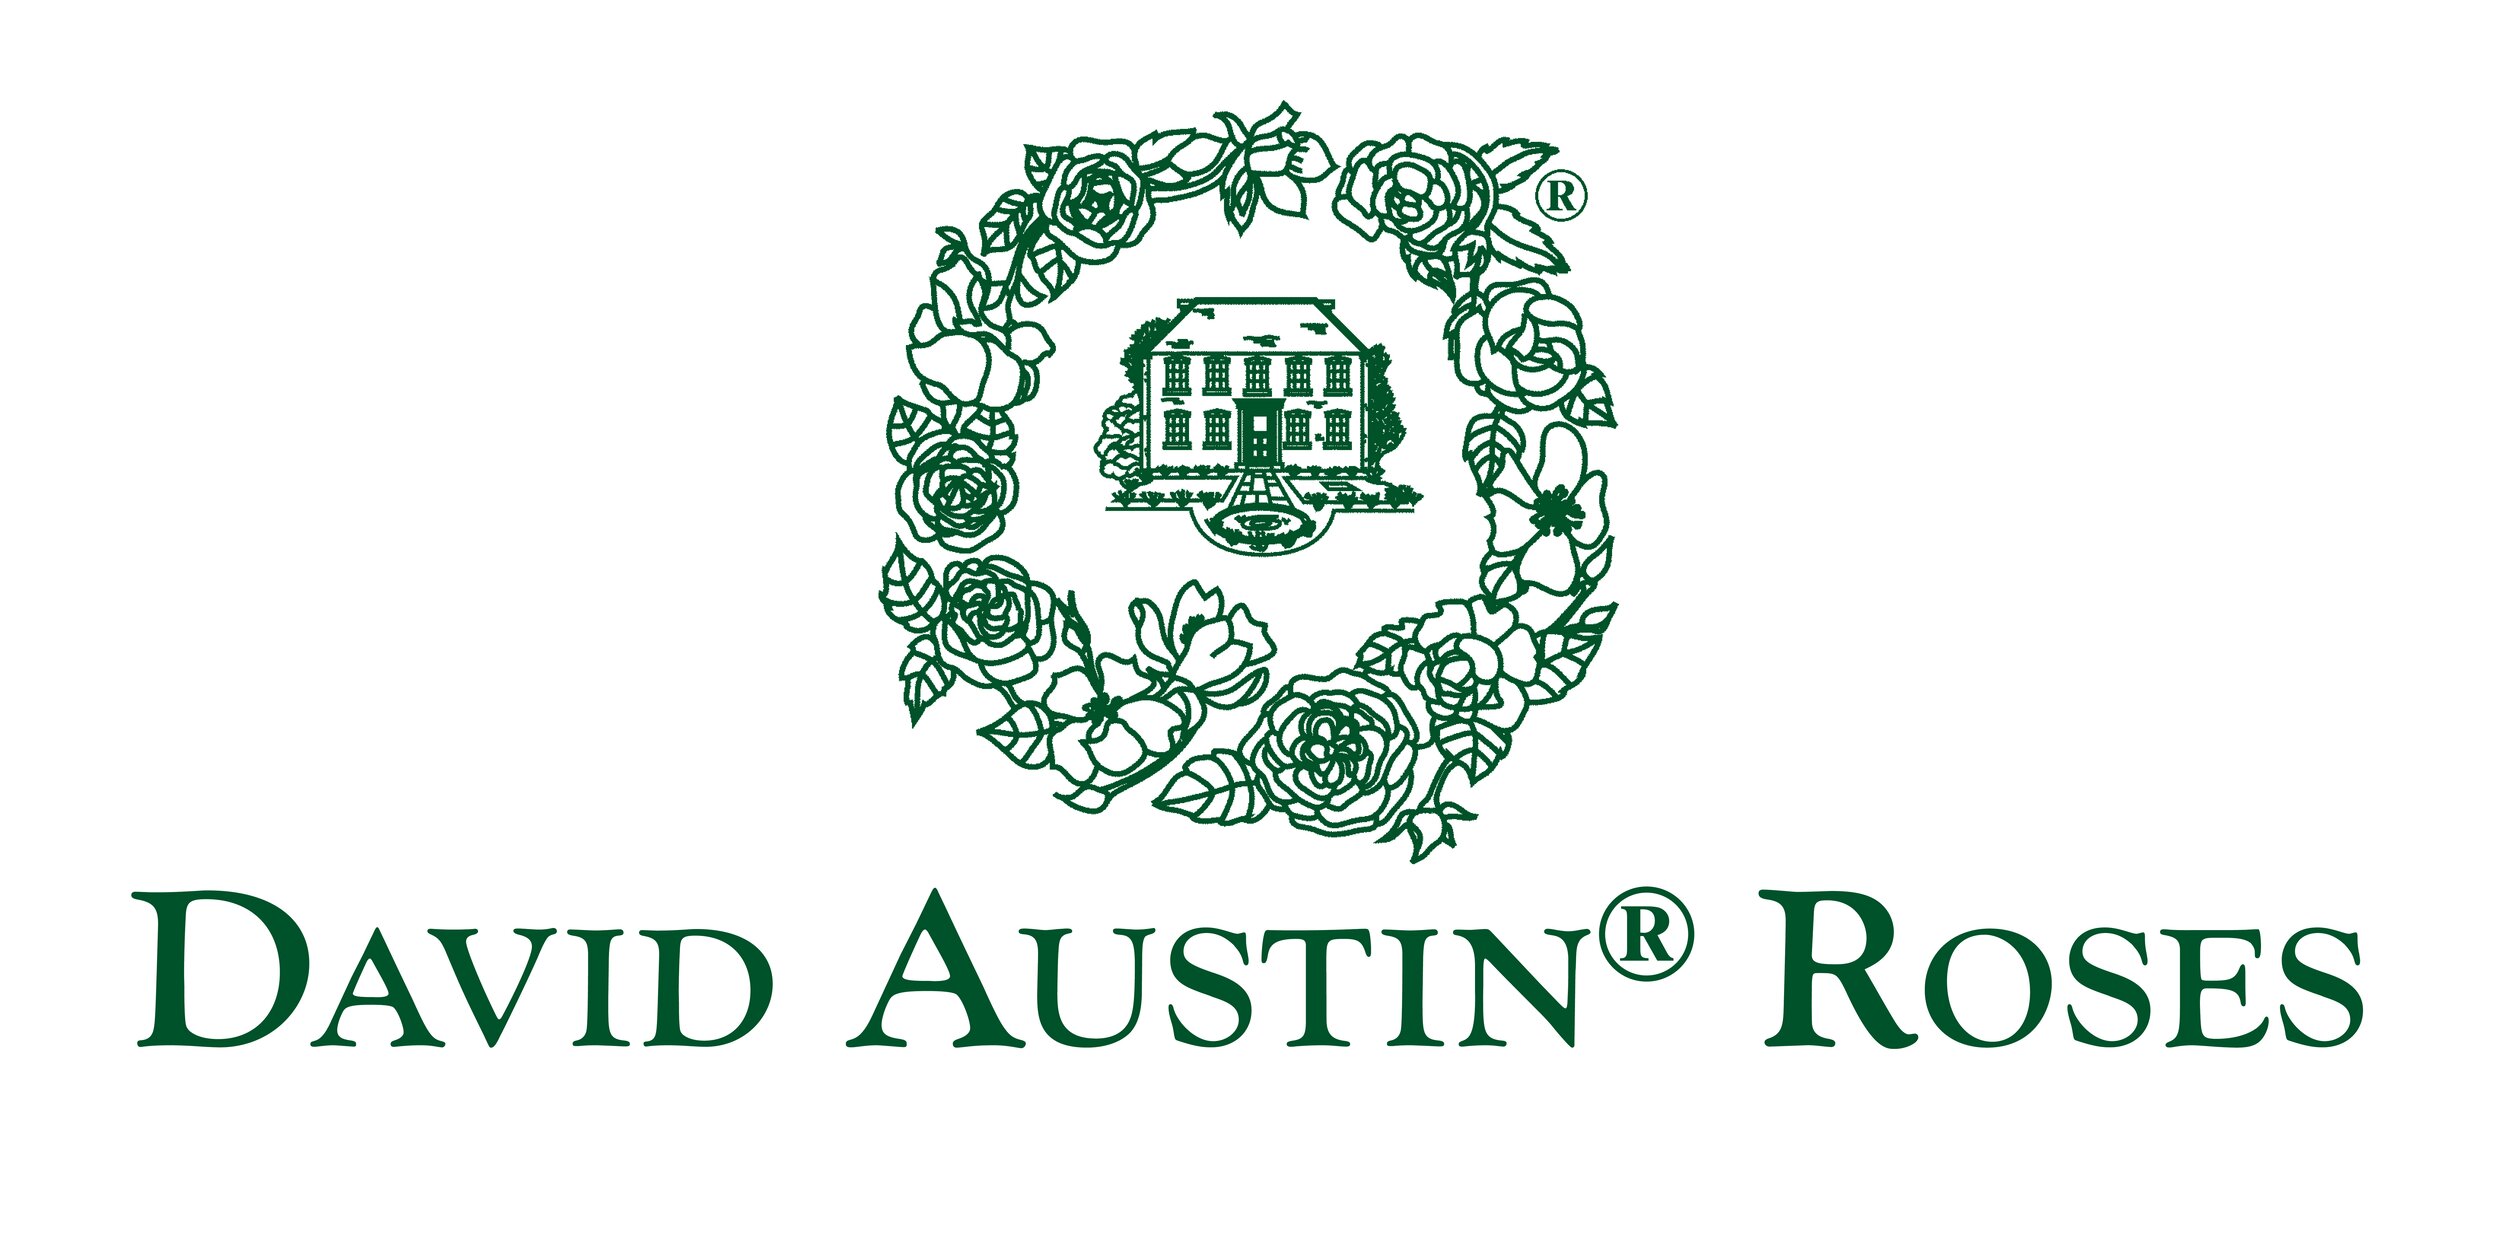 David Austin Roses - Logo.jpg